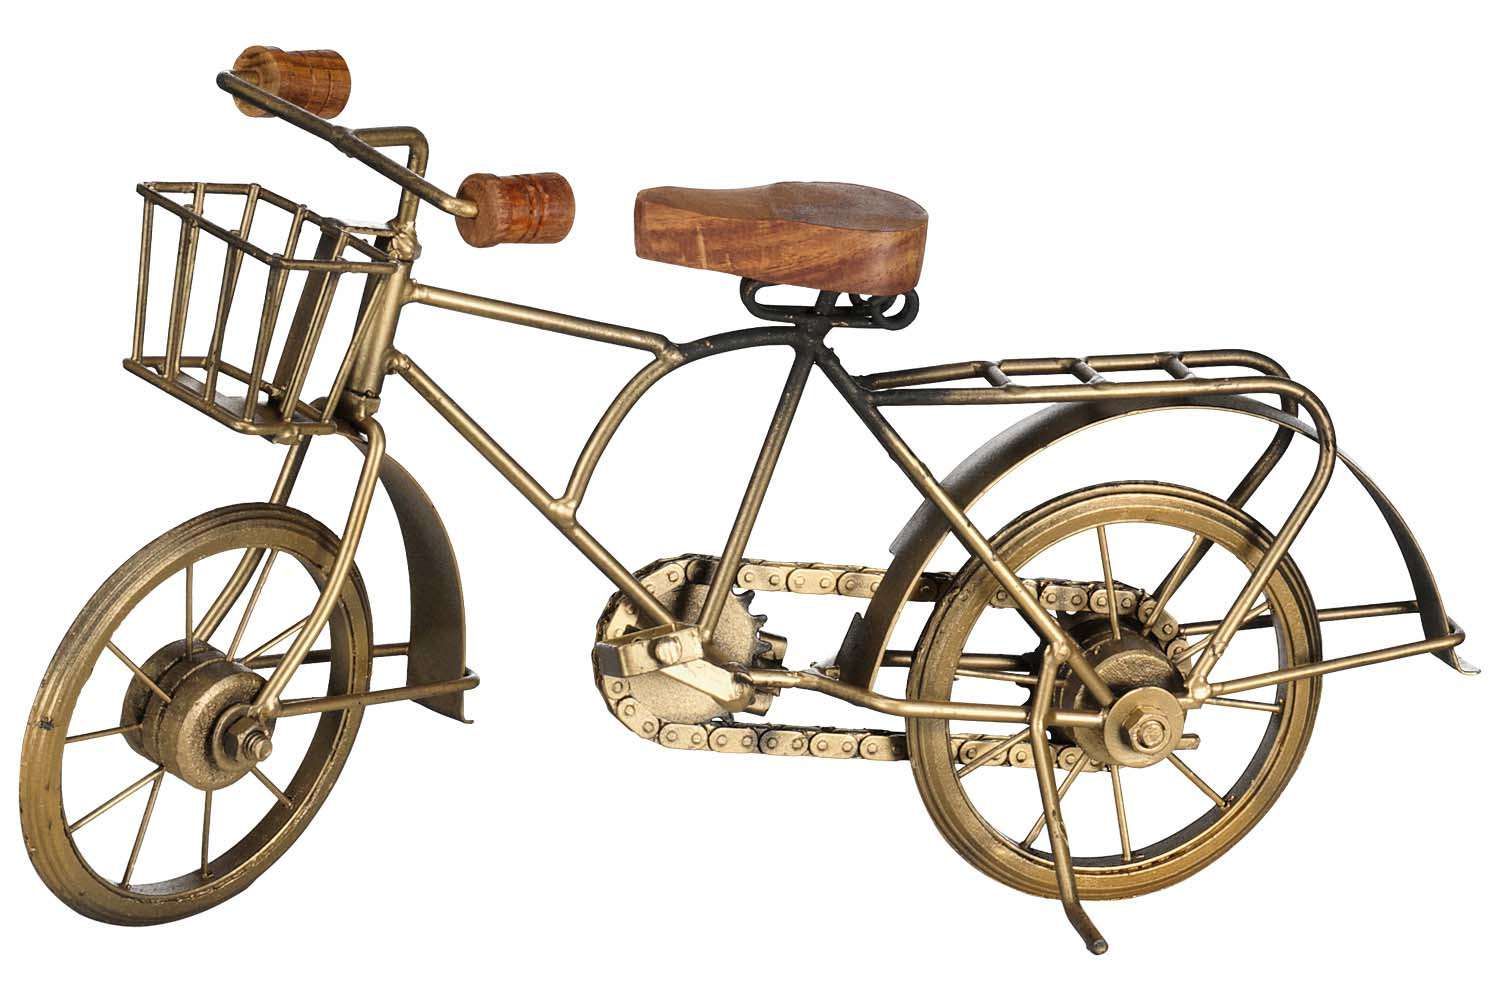 Grap uitzetten zuiverheid Bomont Collection decoratie fiets Geel Ornamenten | Gratis bezorging -  Bomont.nl